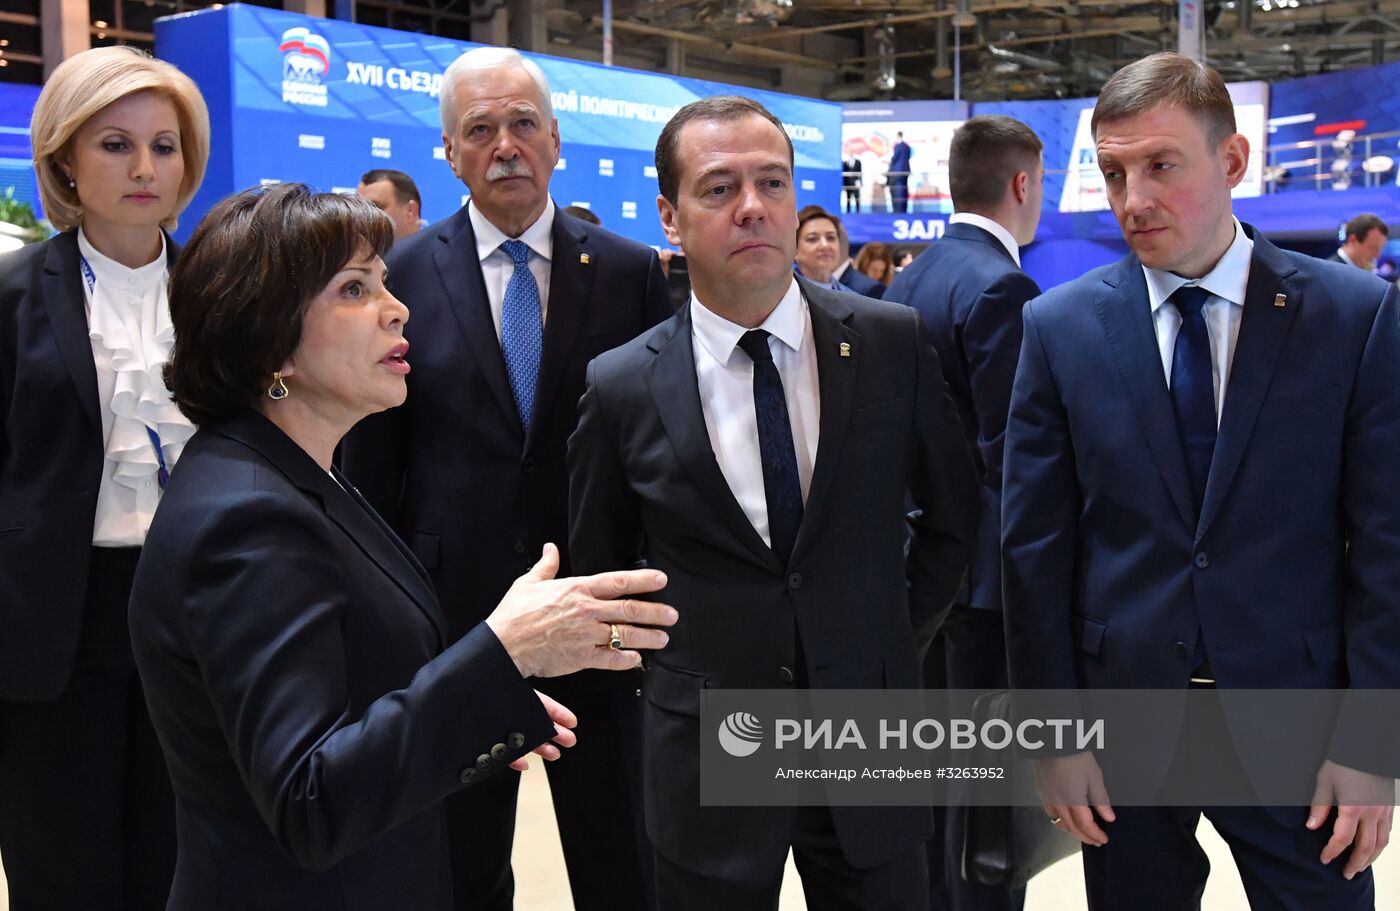 Премьер-министр РФ Д. Медведев принял участие в мероприятиях в рамках XVII Съезда партии "Единая Россия"